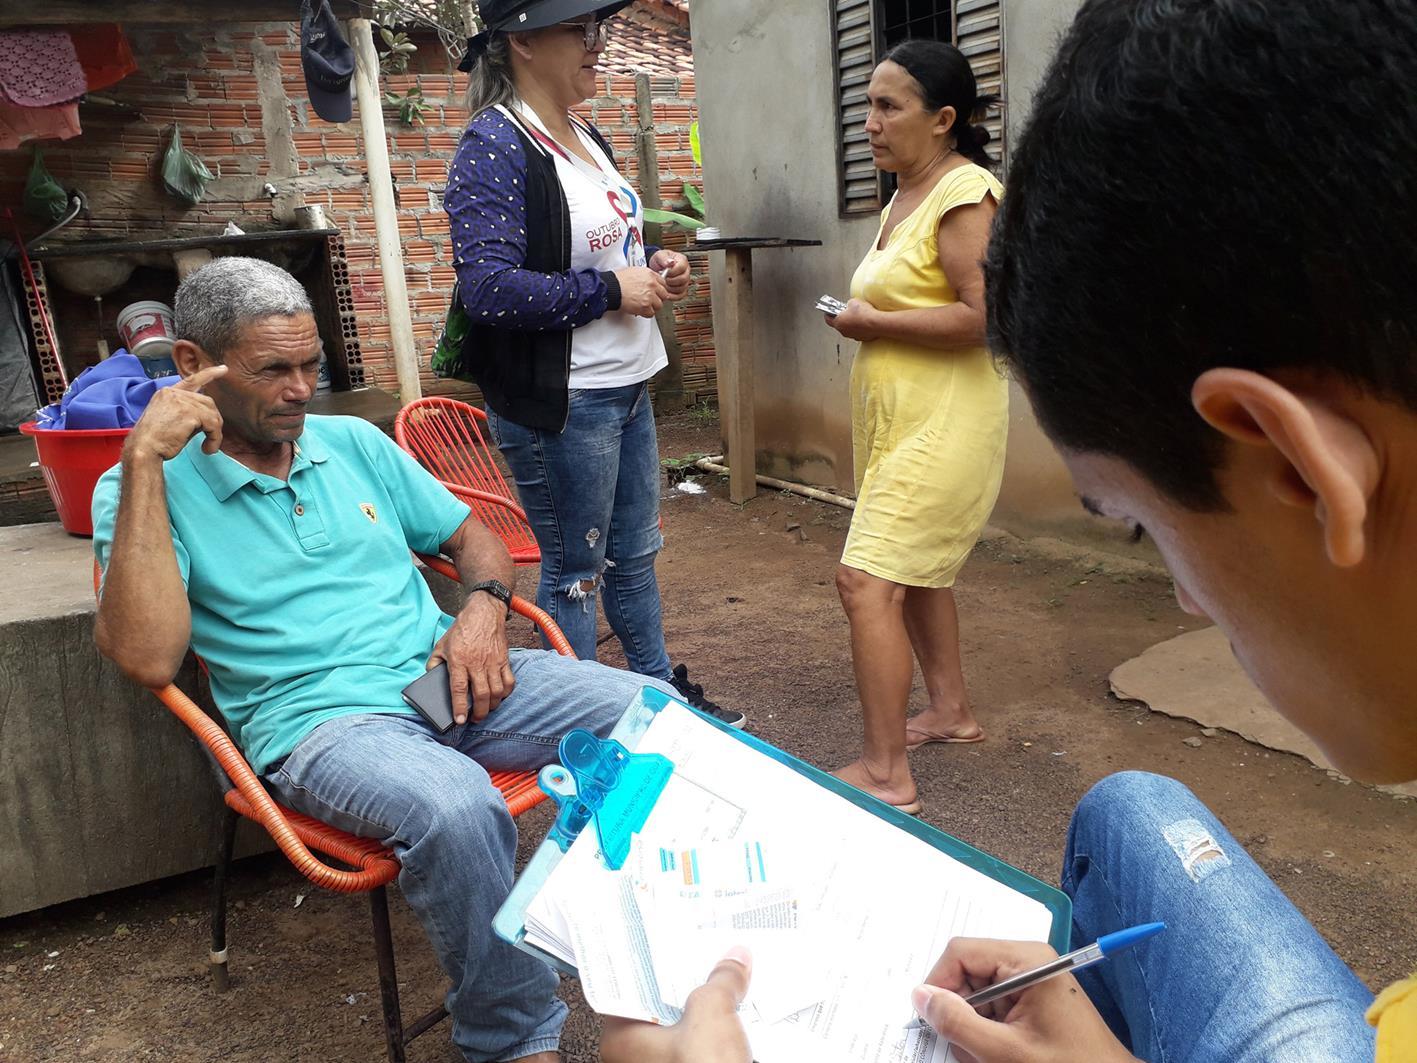 Setor Novo Horizonte é o 2º bairro a receber ação do projeto “Imóvel Legalizado” em Guaraí